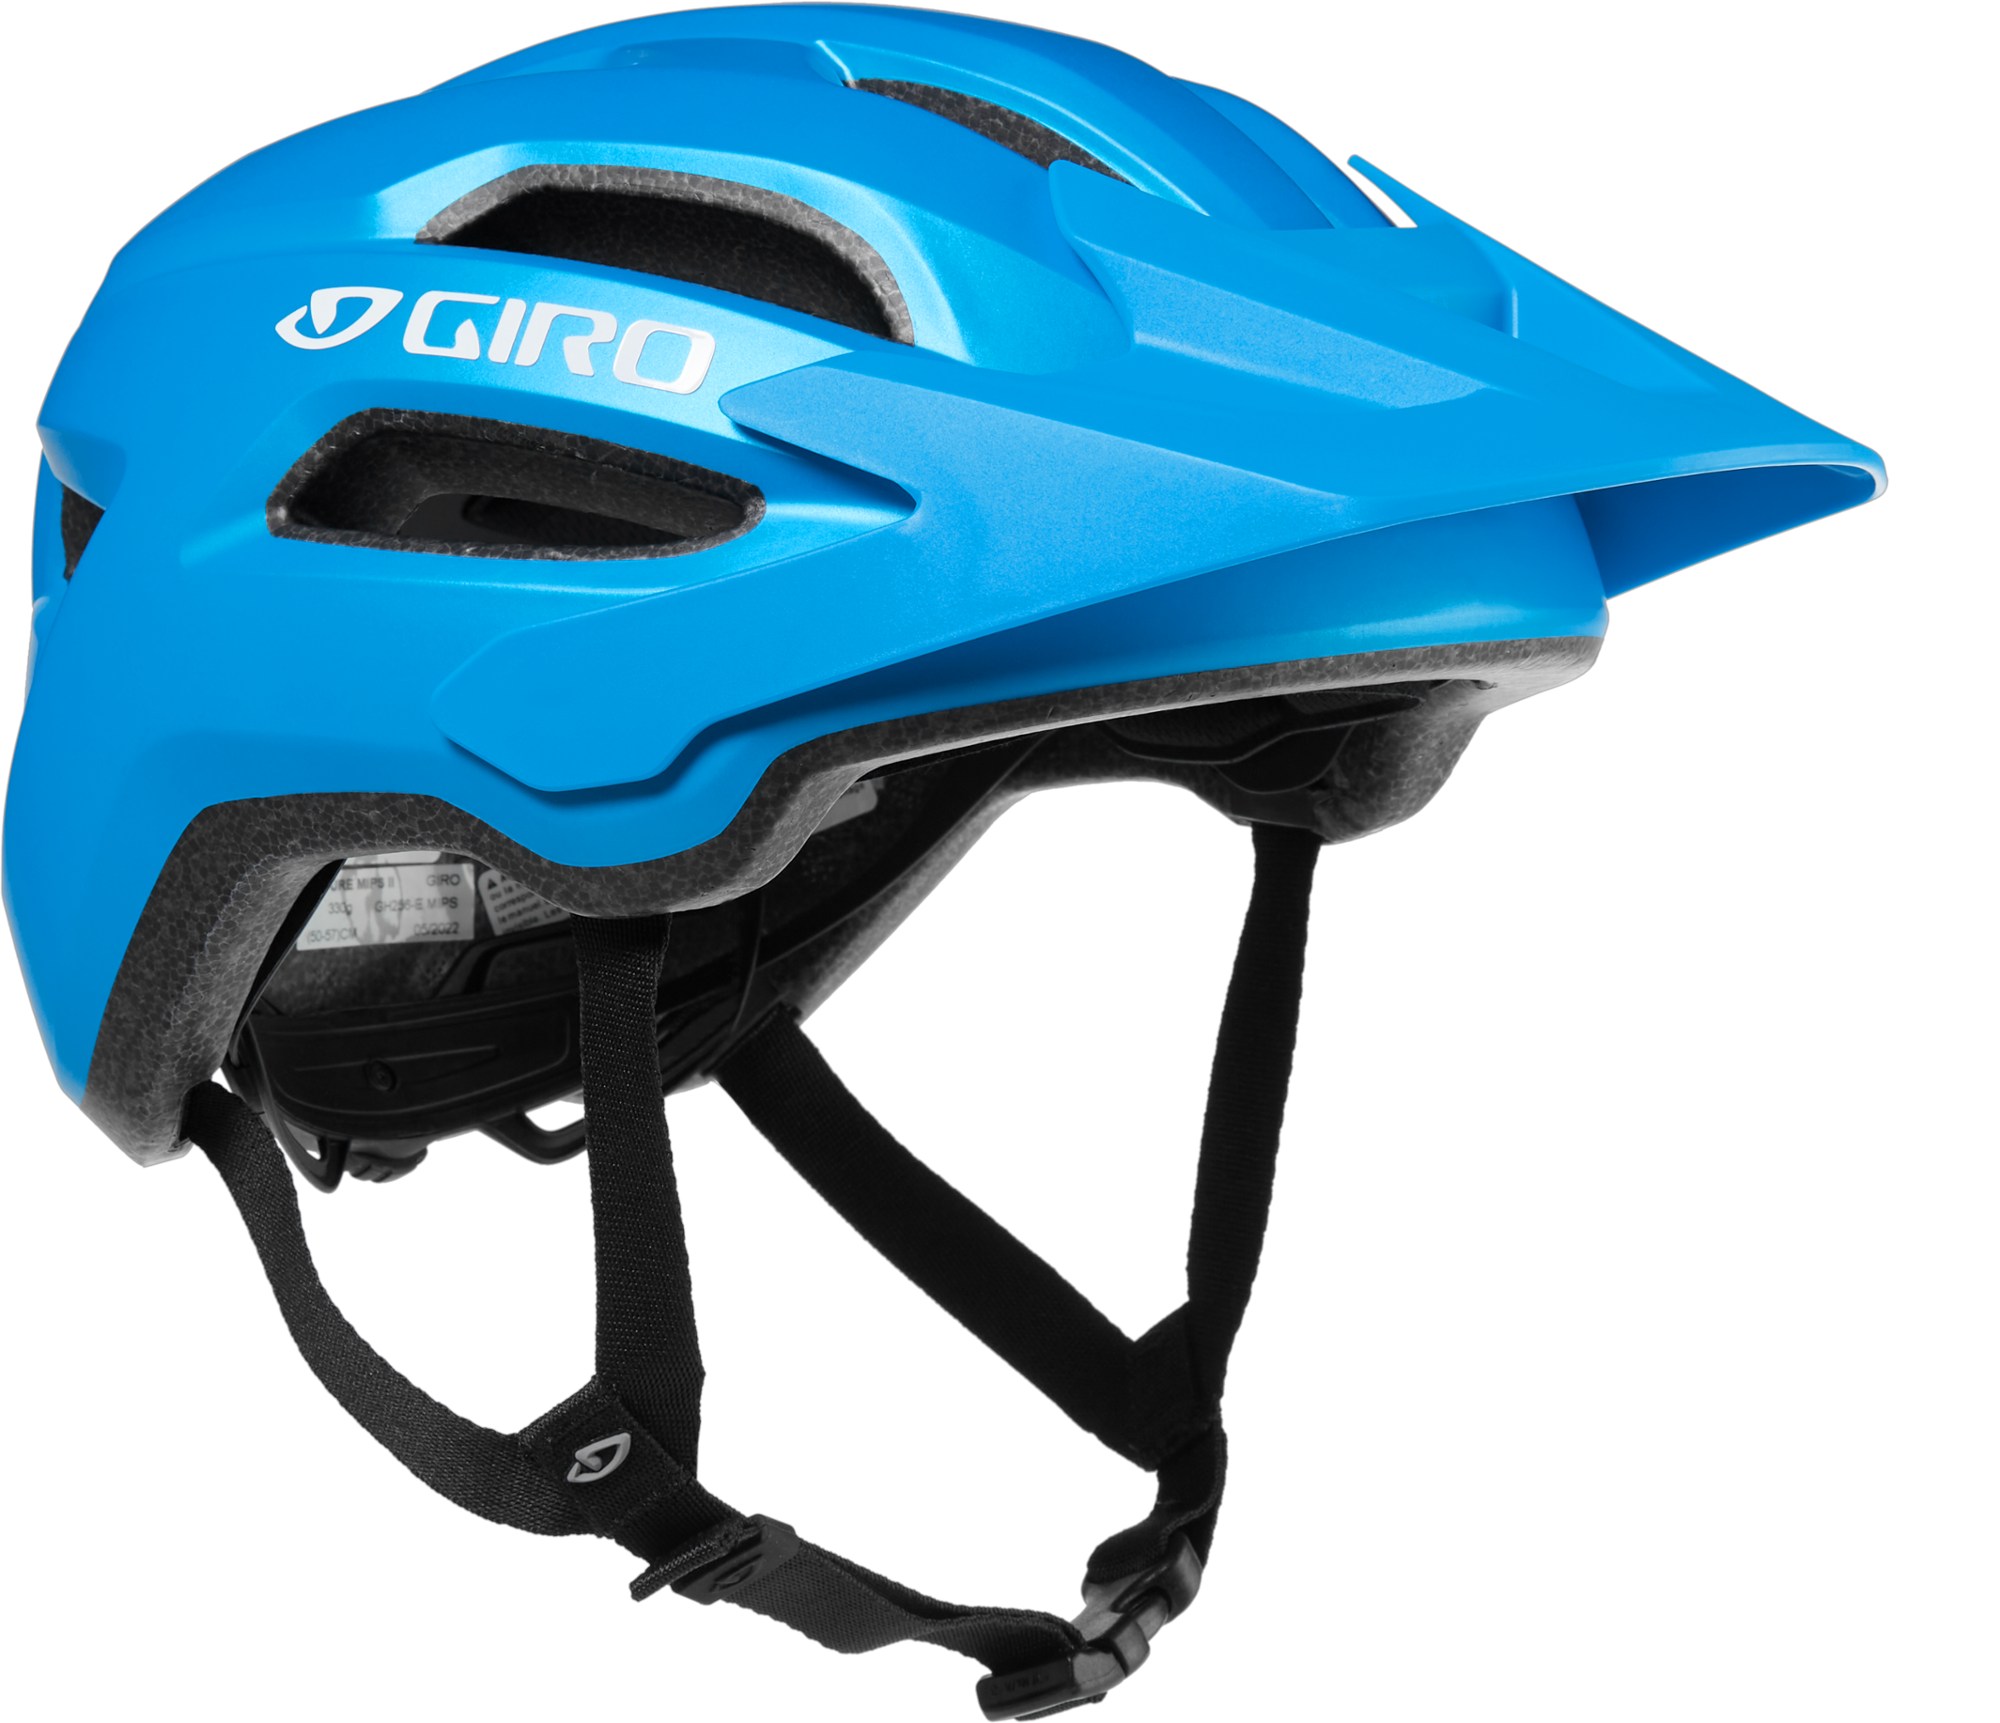 Велосипедный шлем Fixture Mips II — детский Giro, синий